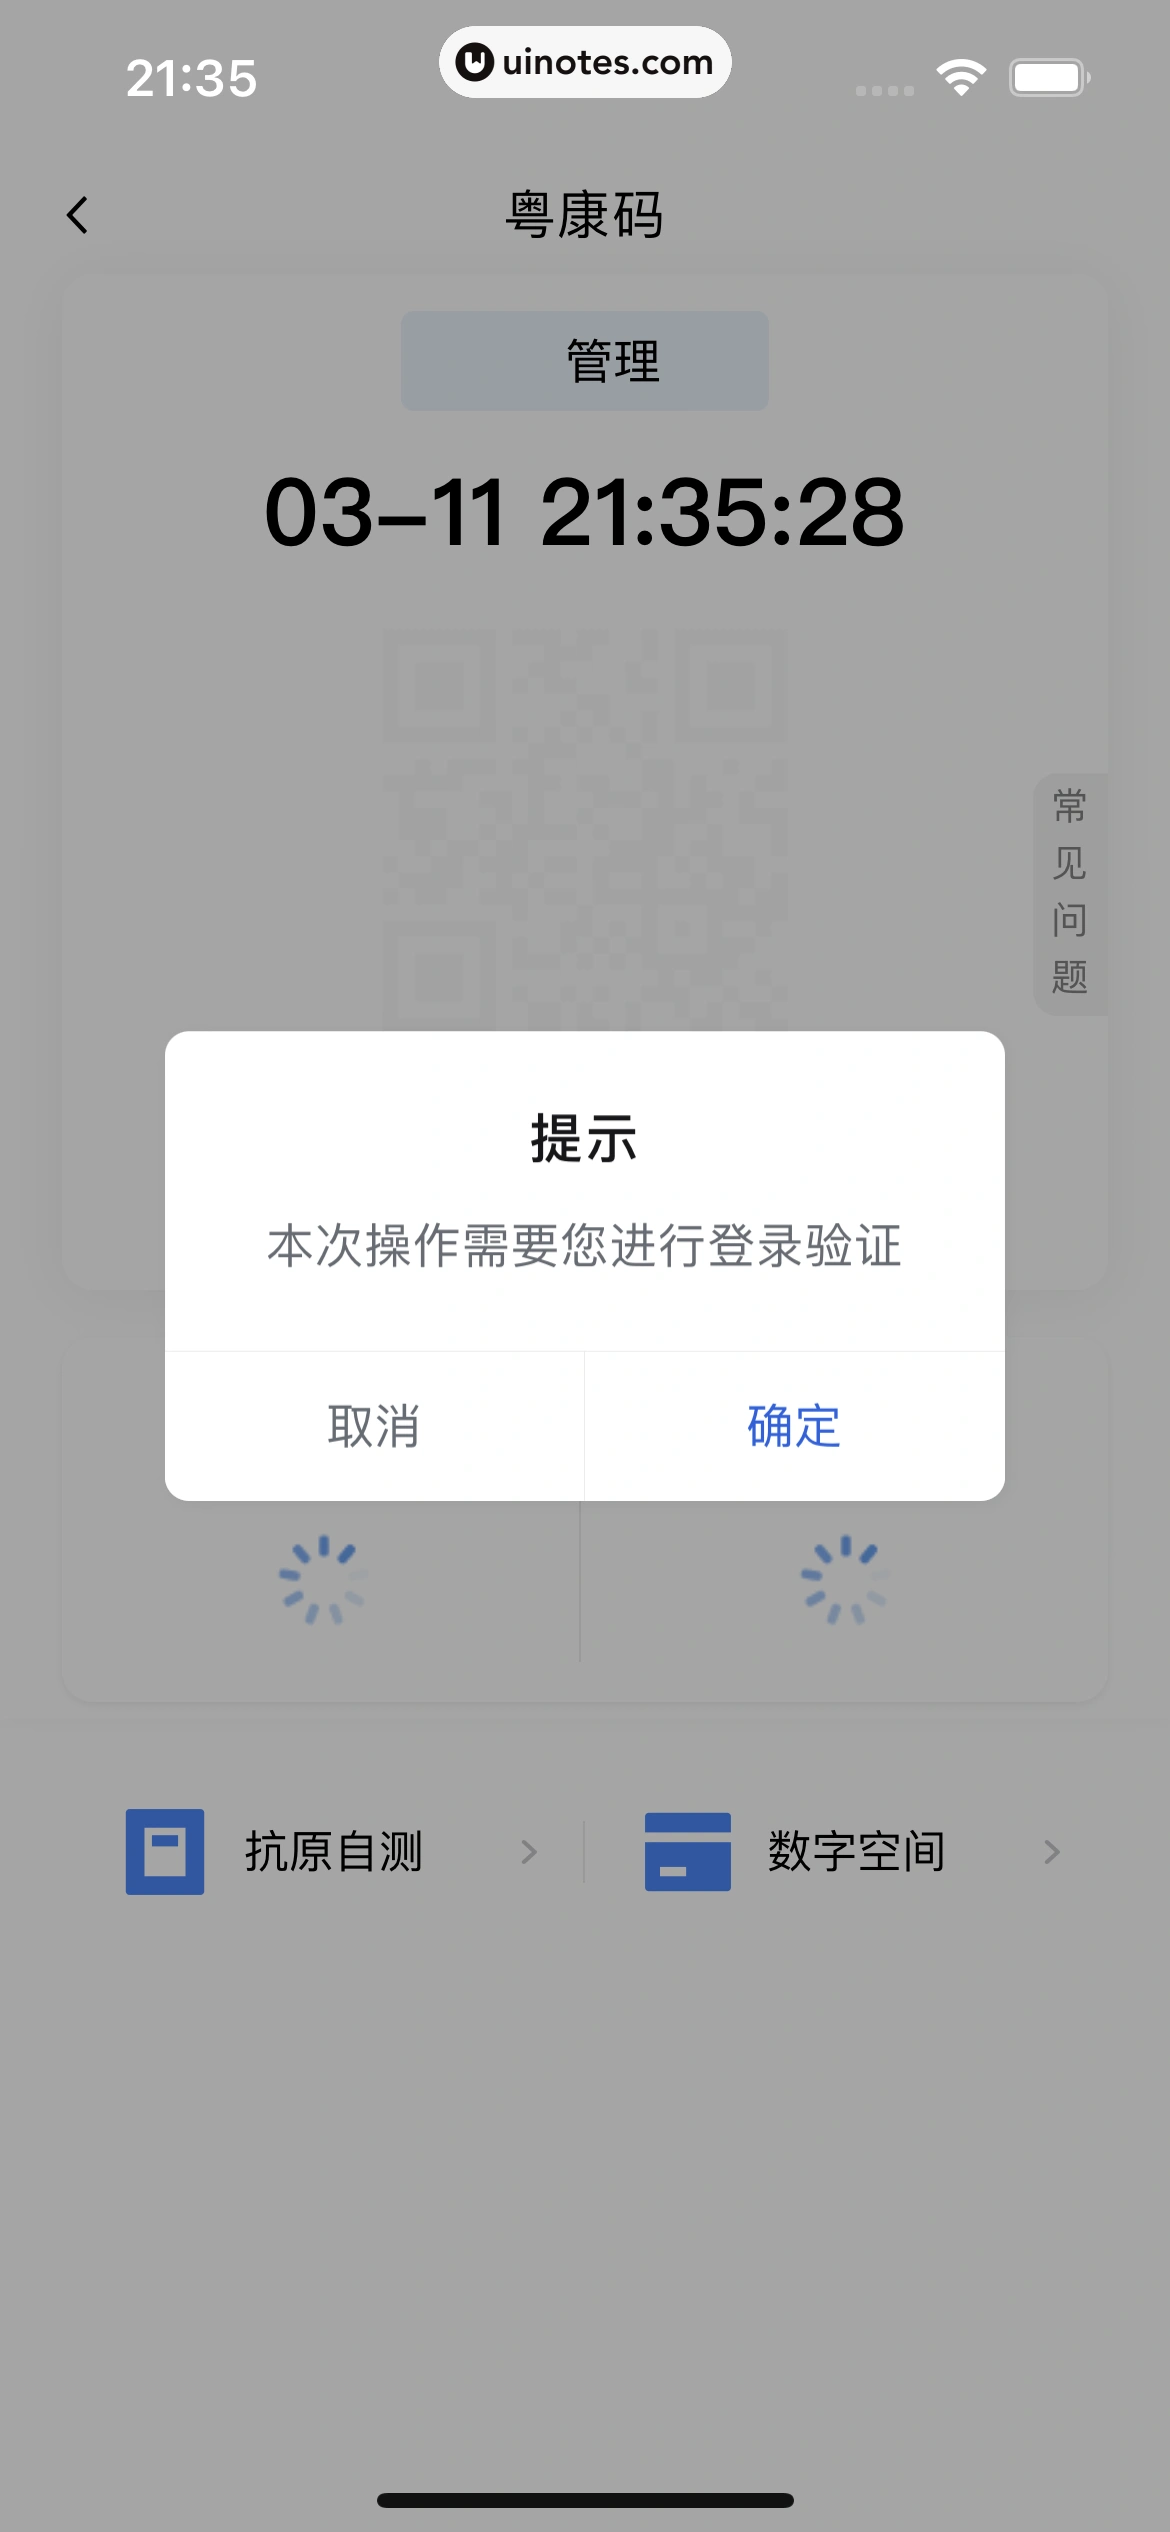 粤省事 App 截图 016 - UI Notes